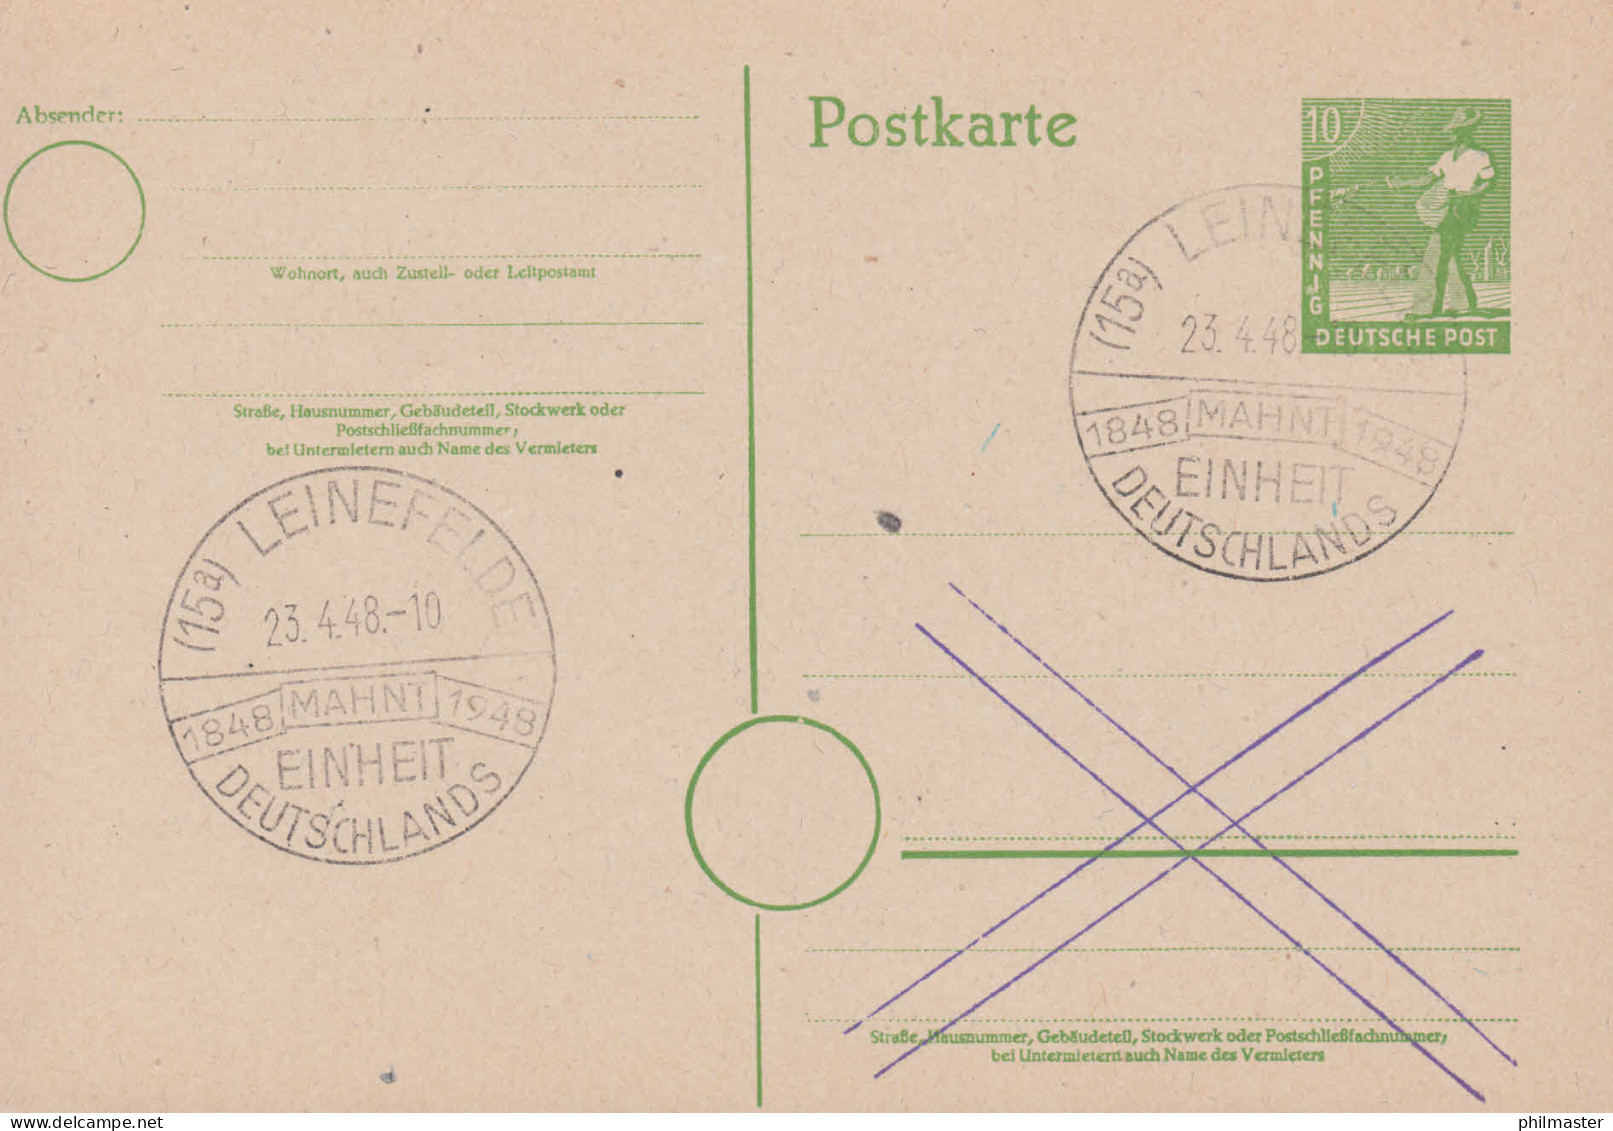 SSt LEINEFELDE 1848-1948 Mahnt Einheit Deutschlands 23.4.48 Auf Postkarte P 961 - Gebraucht